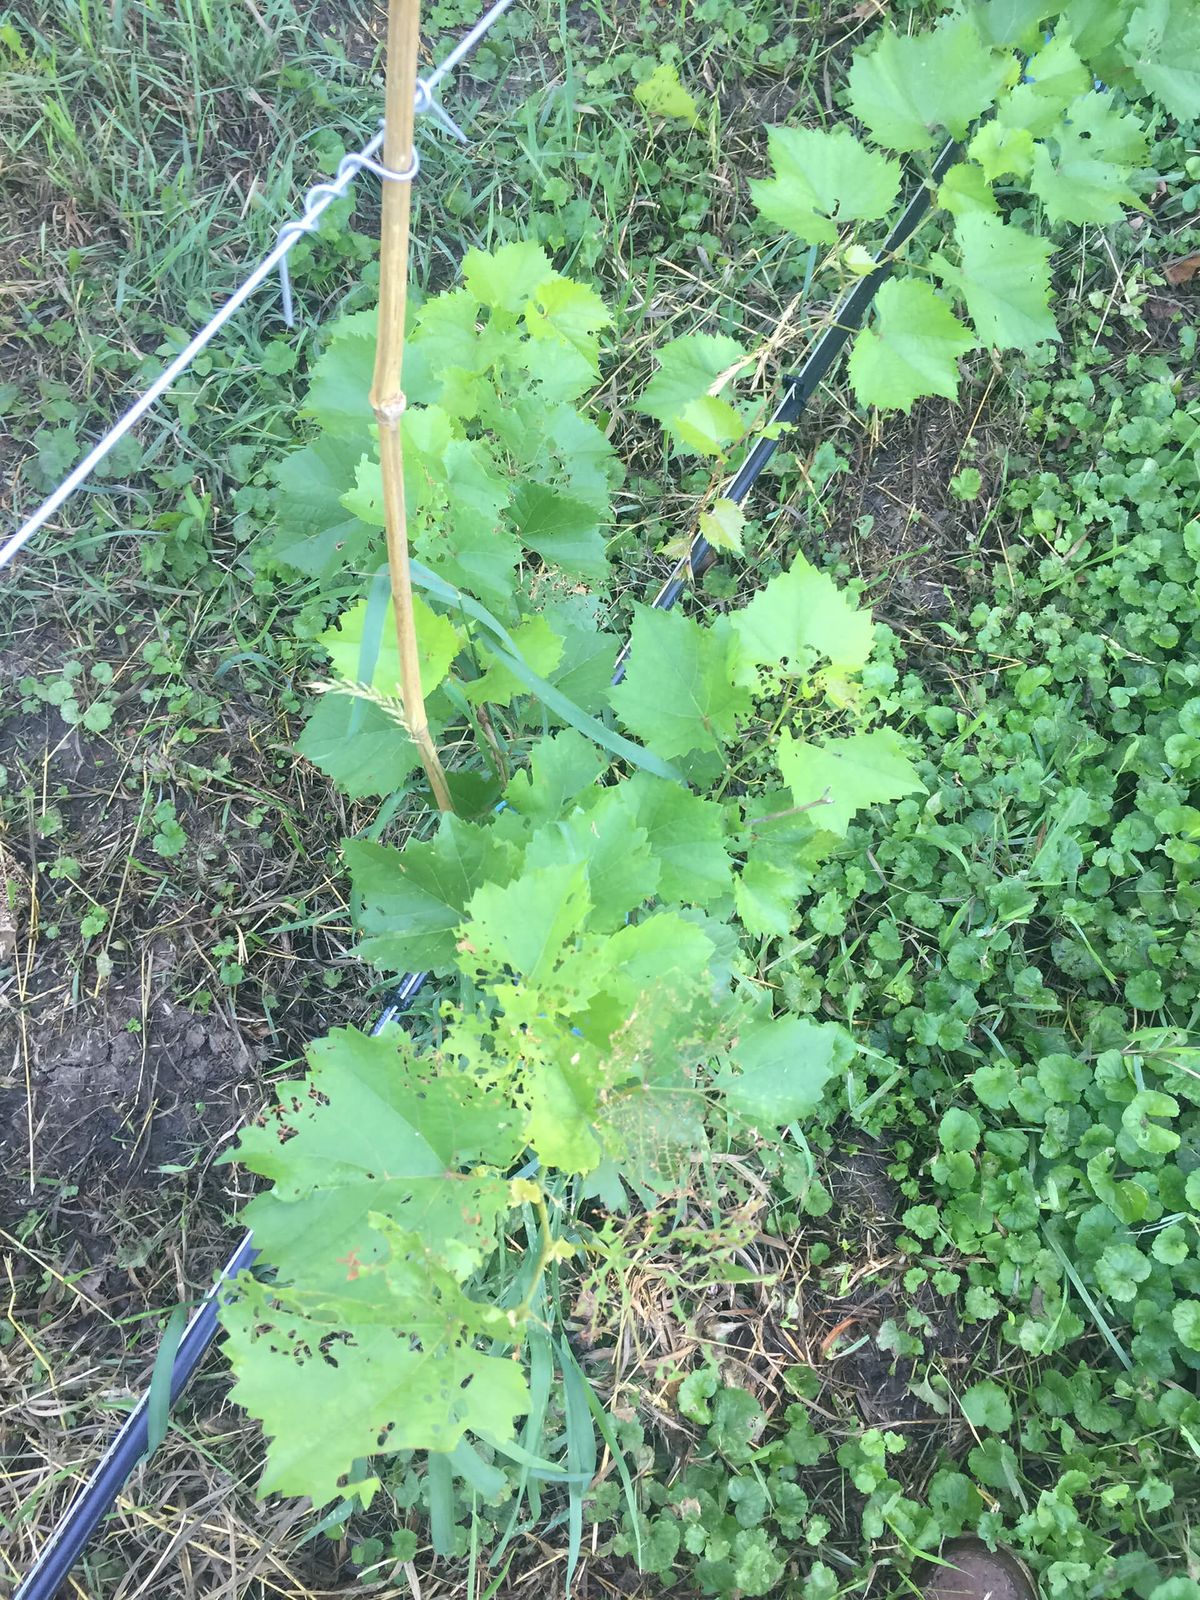 Vinyes danyades a la vinya del jardí